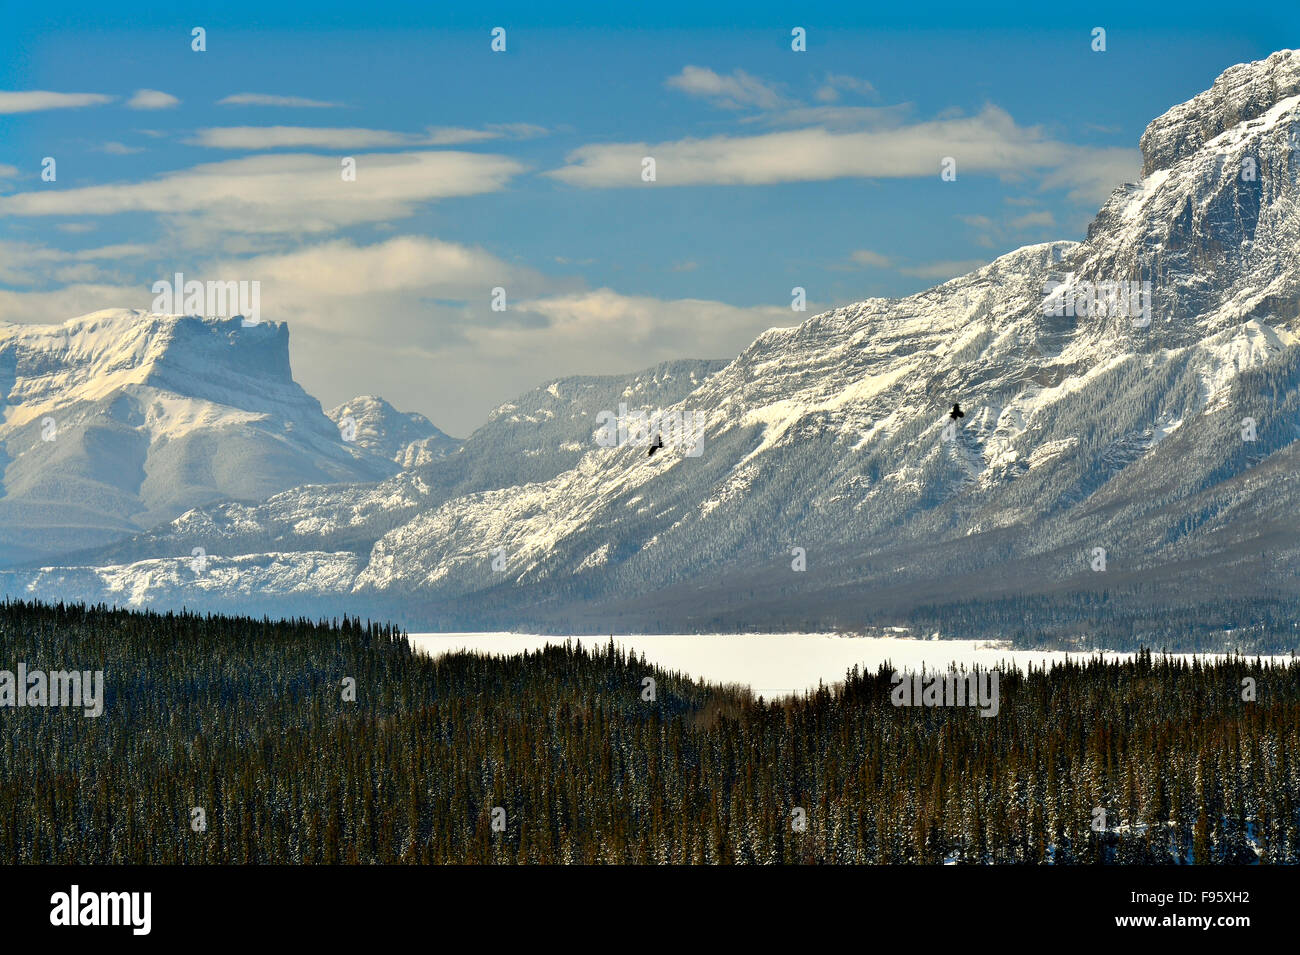 Un paisaje invernal imagen capturada en Brule de las nevadas montañas rocosas del oeste de Alberta, Canadá Foto de stock